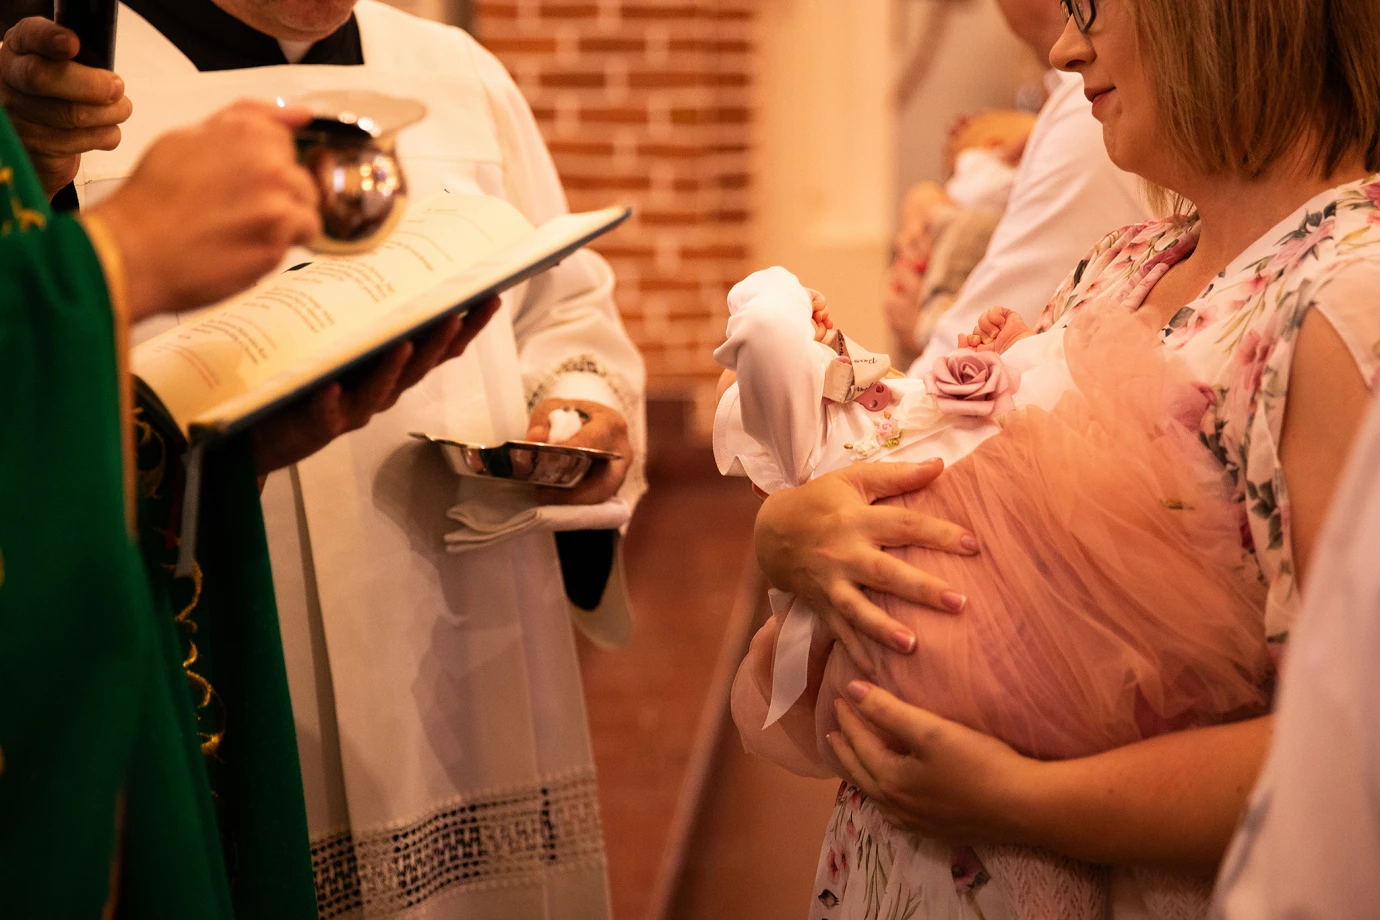 fotograf warszawa anna-syski portfolio zdjecia z chrztu chrzest reportaz chrzciny